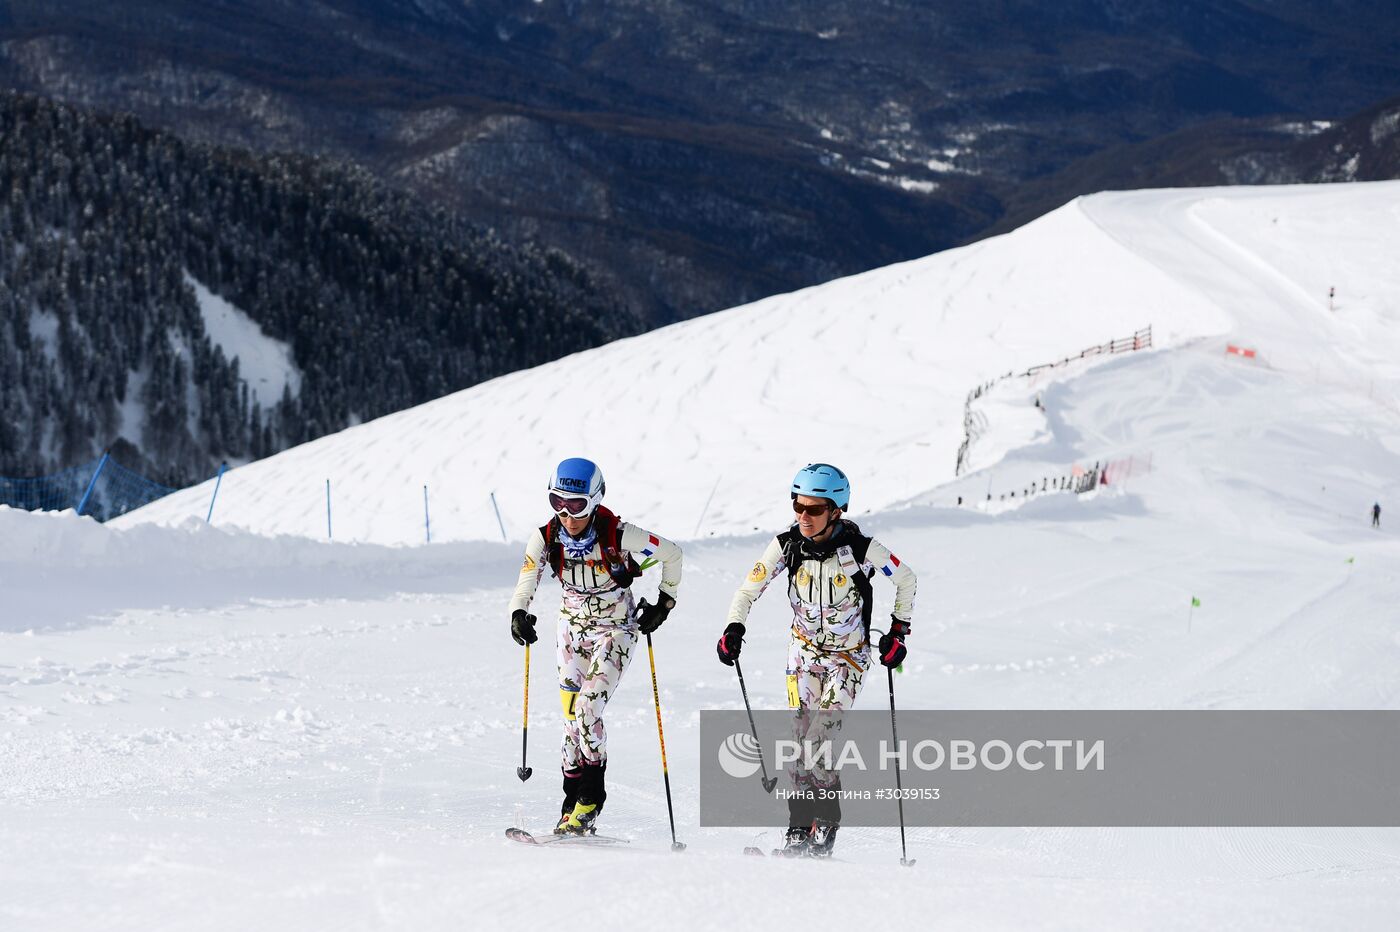 III Всемирные зимние военные Игры. Ски-альпинизм. Женщины. Командная гонка